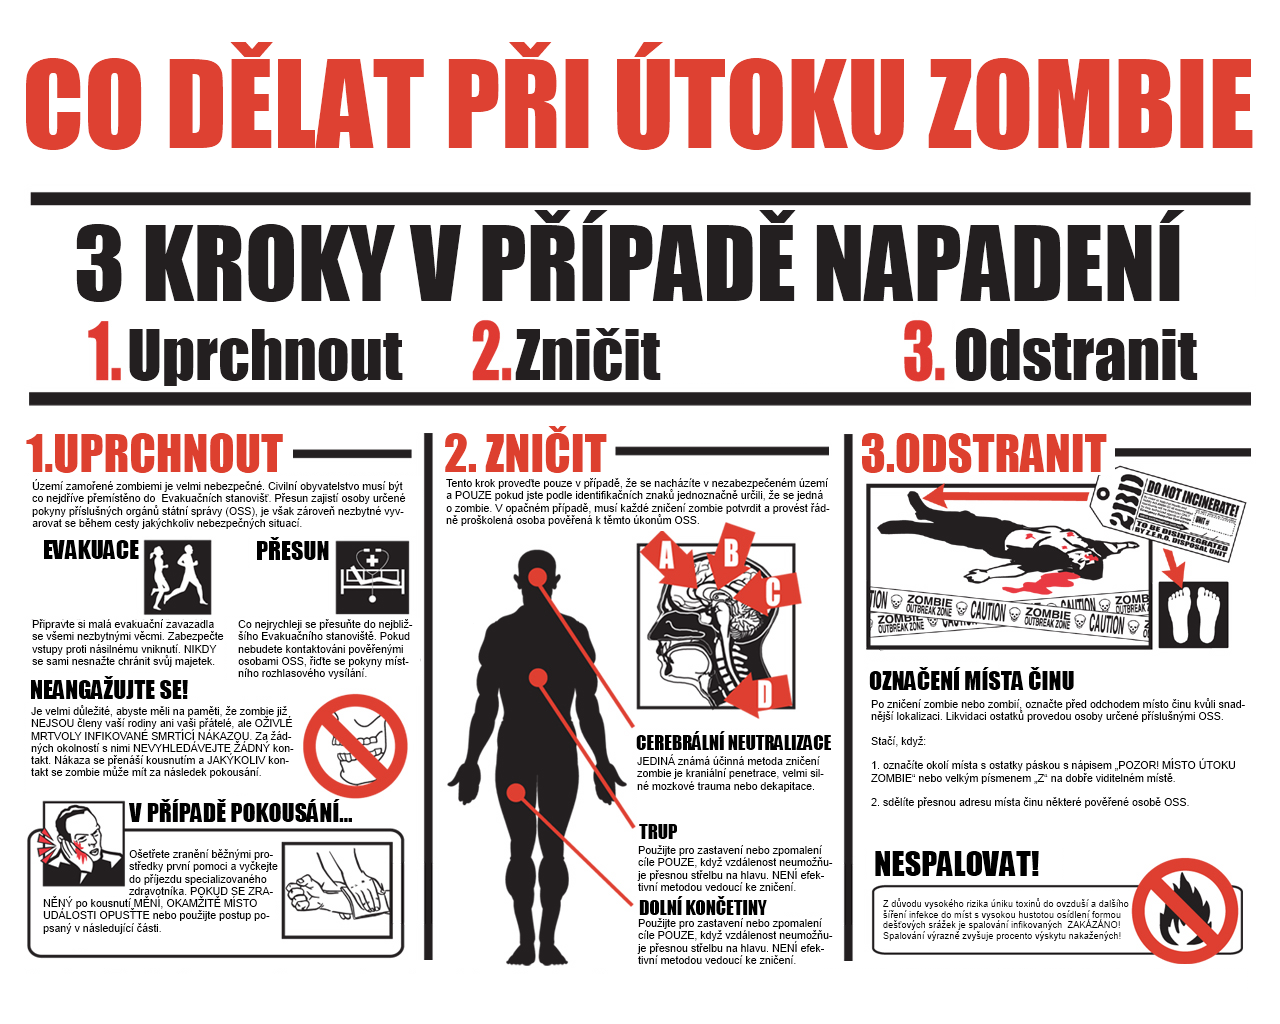 Co dělat při útoku zombie